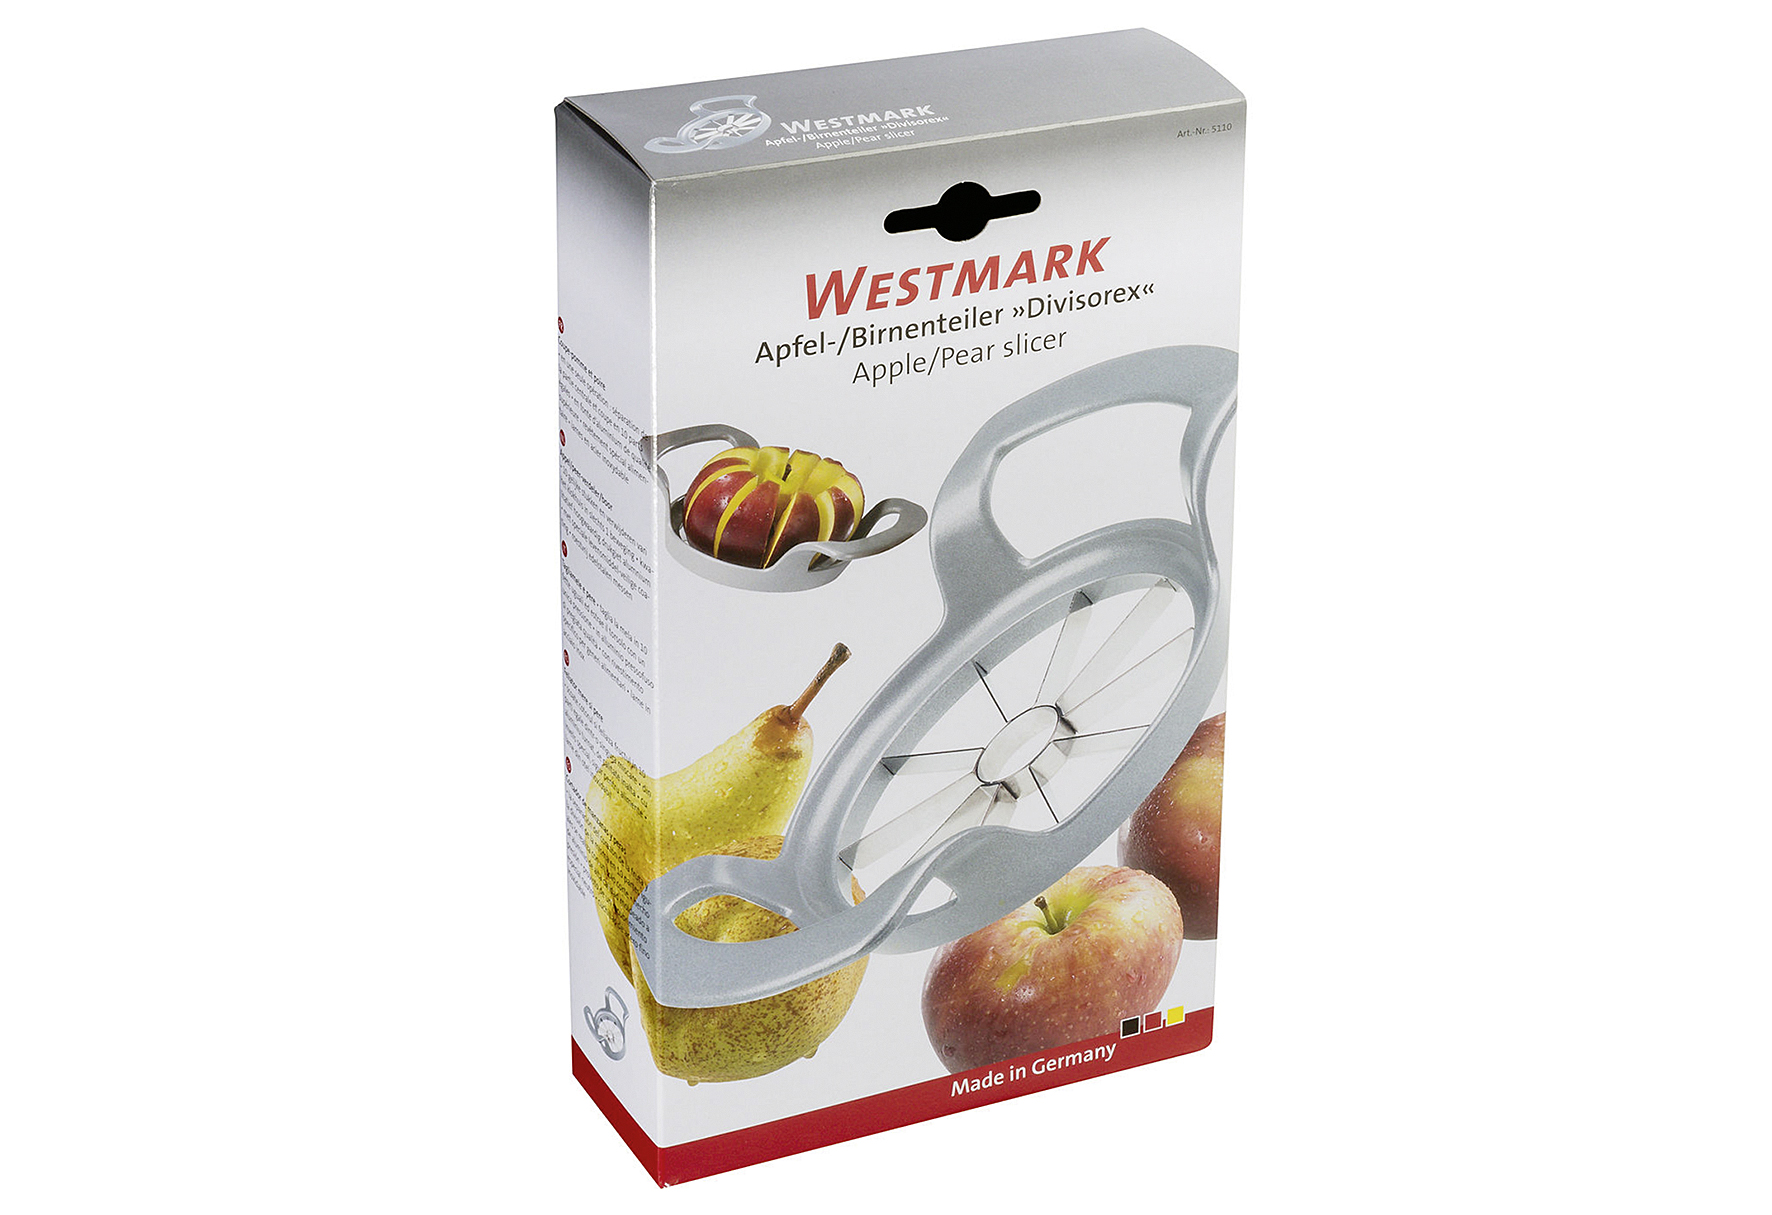 WESTMARK Apfel- und Birnenteiler Divisorex 20,9x11,9x5,1cm